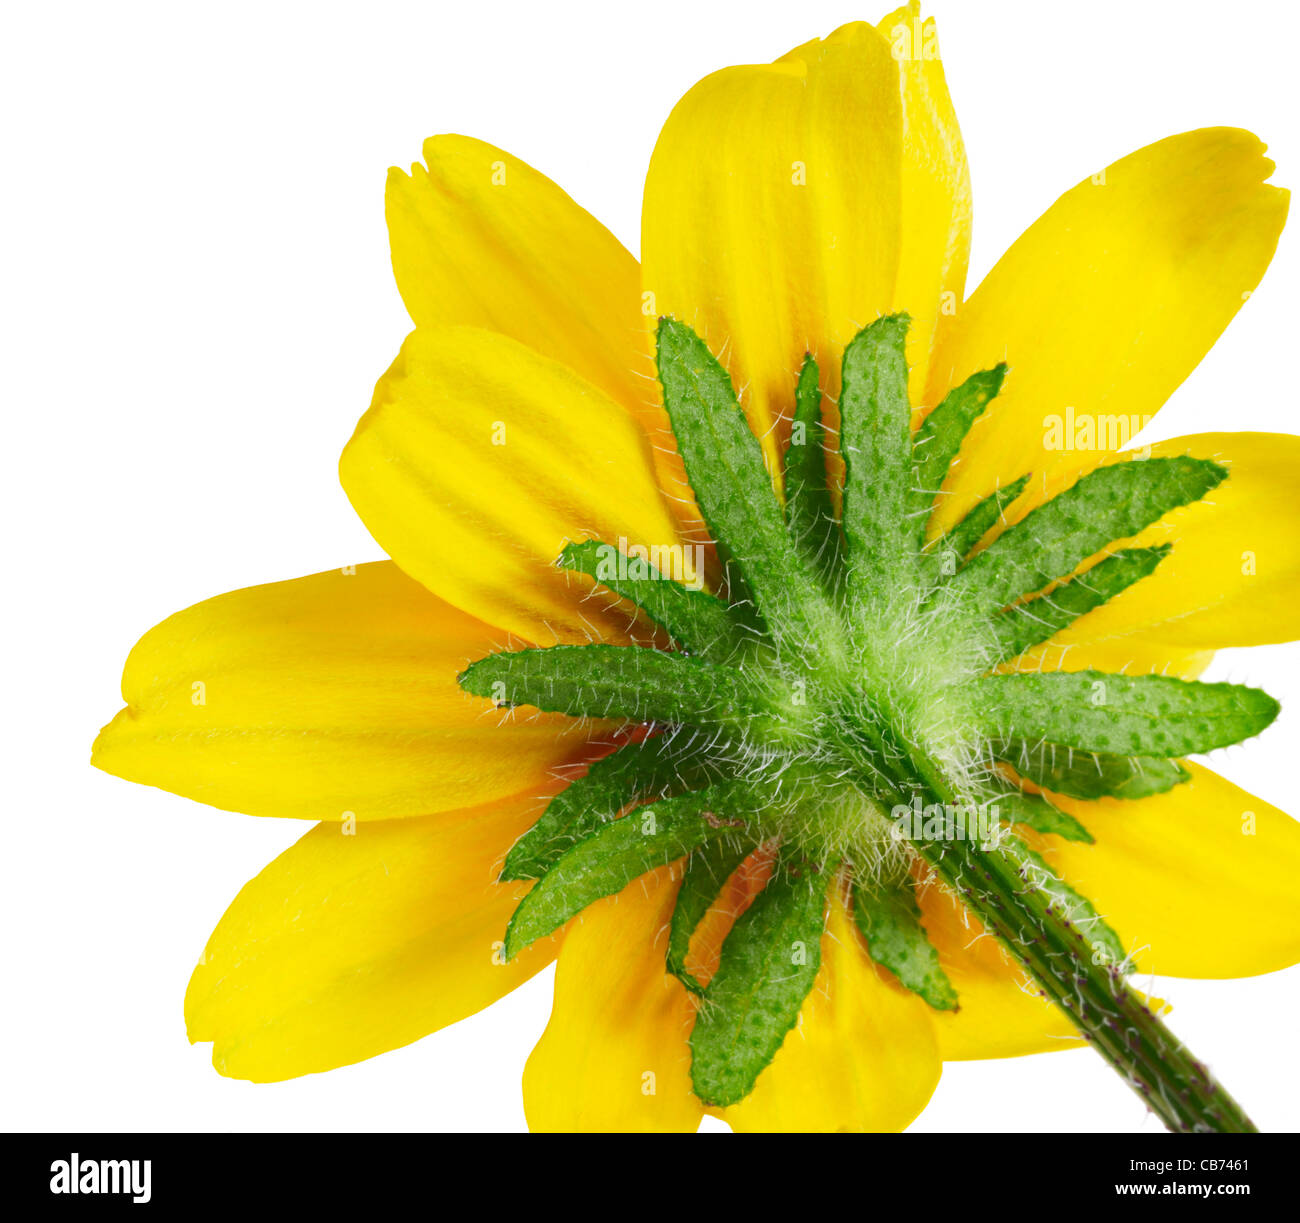 Dettagli sul retro di un fiore giallo nel retro bianco Foto Stock